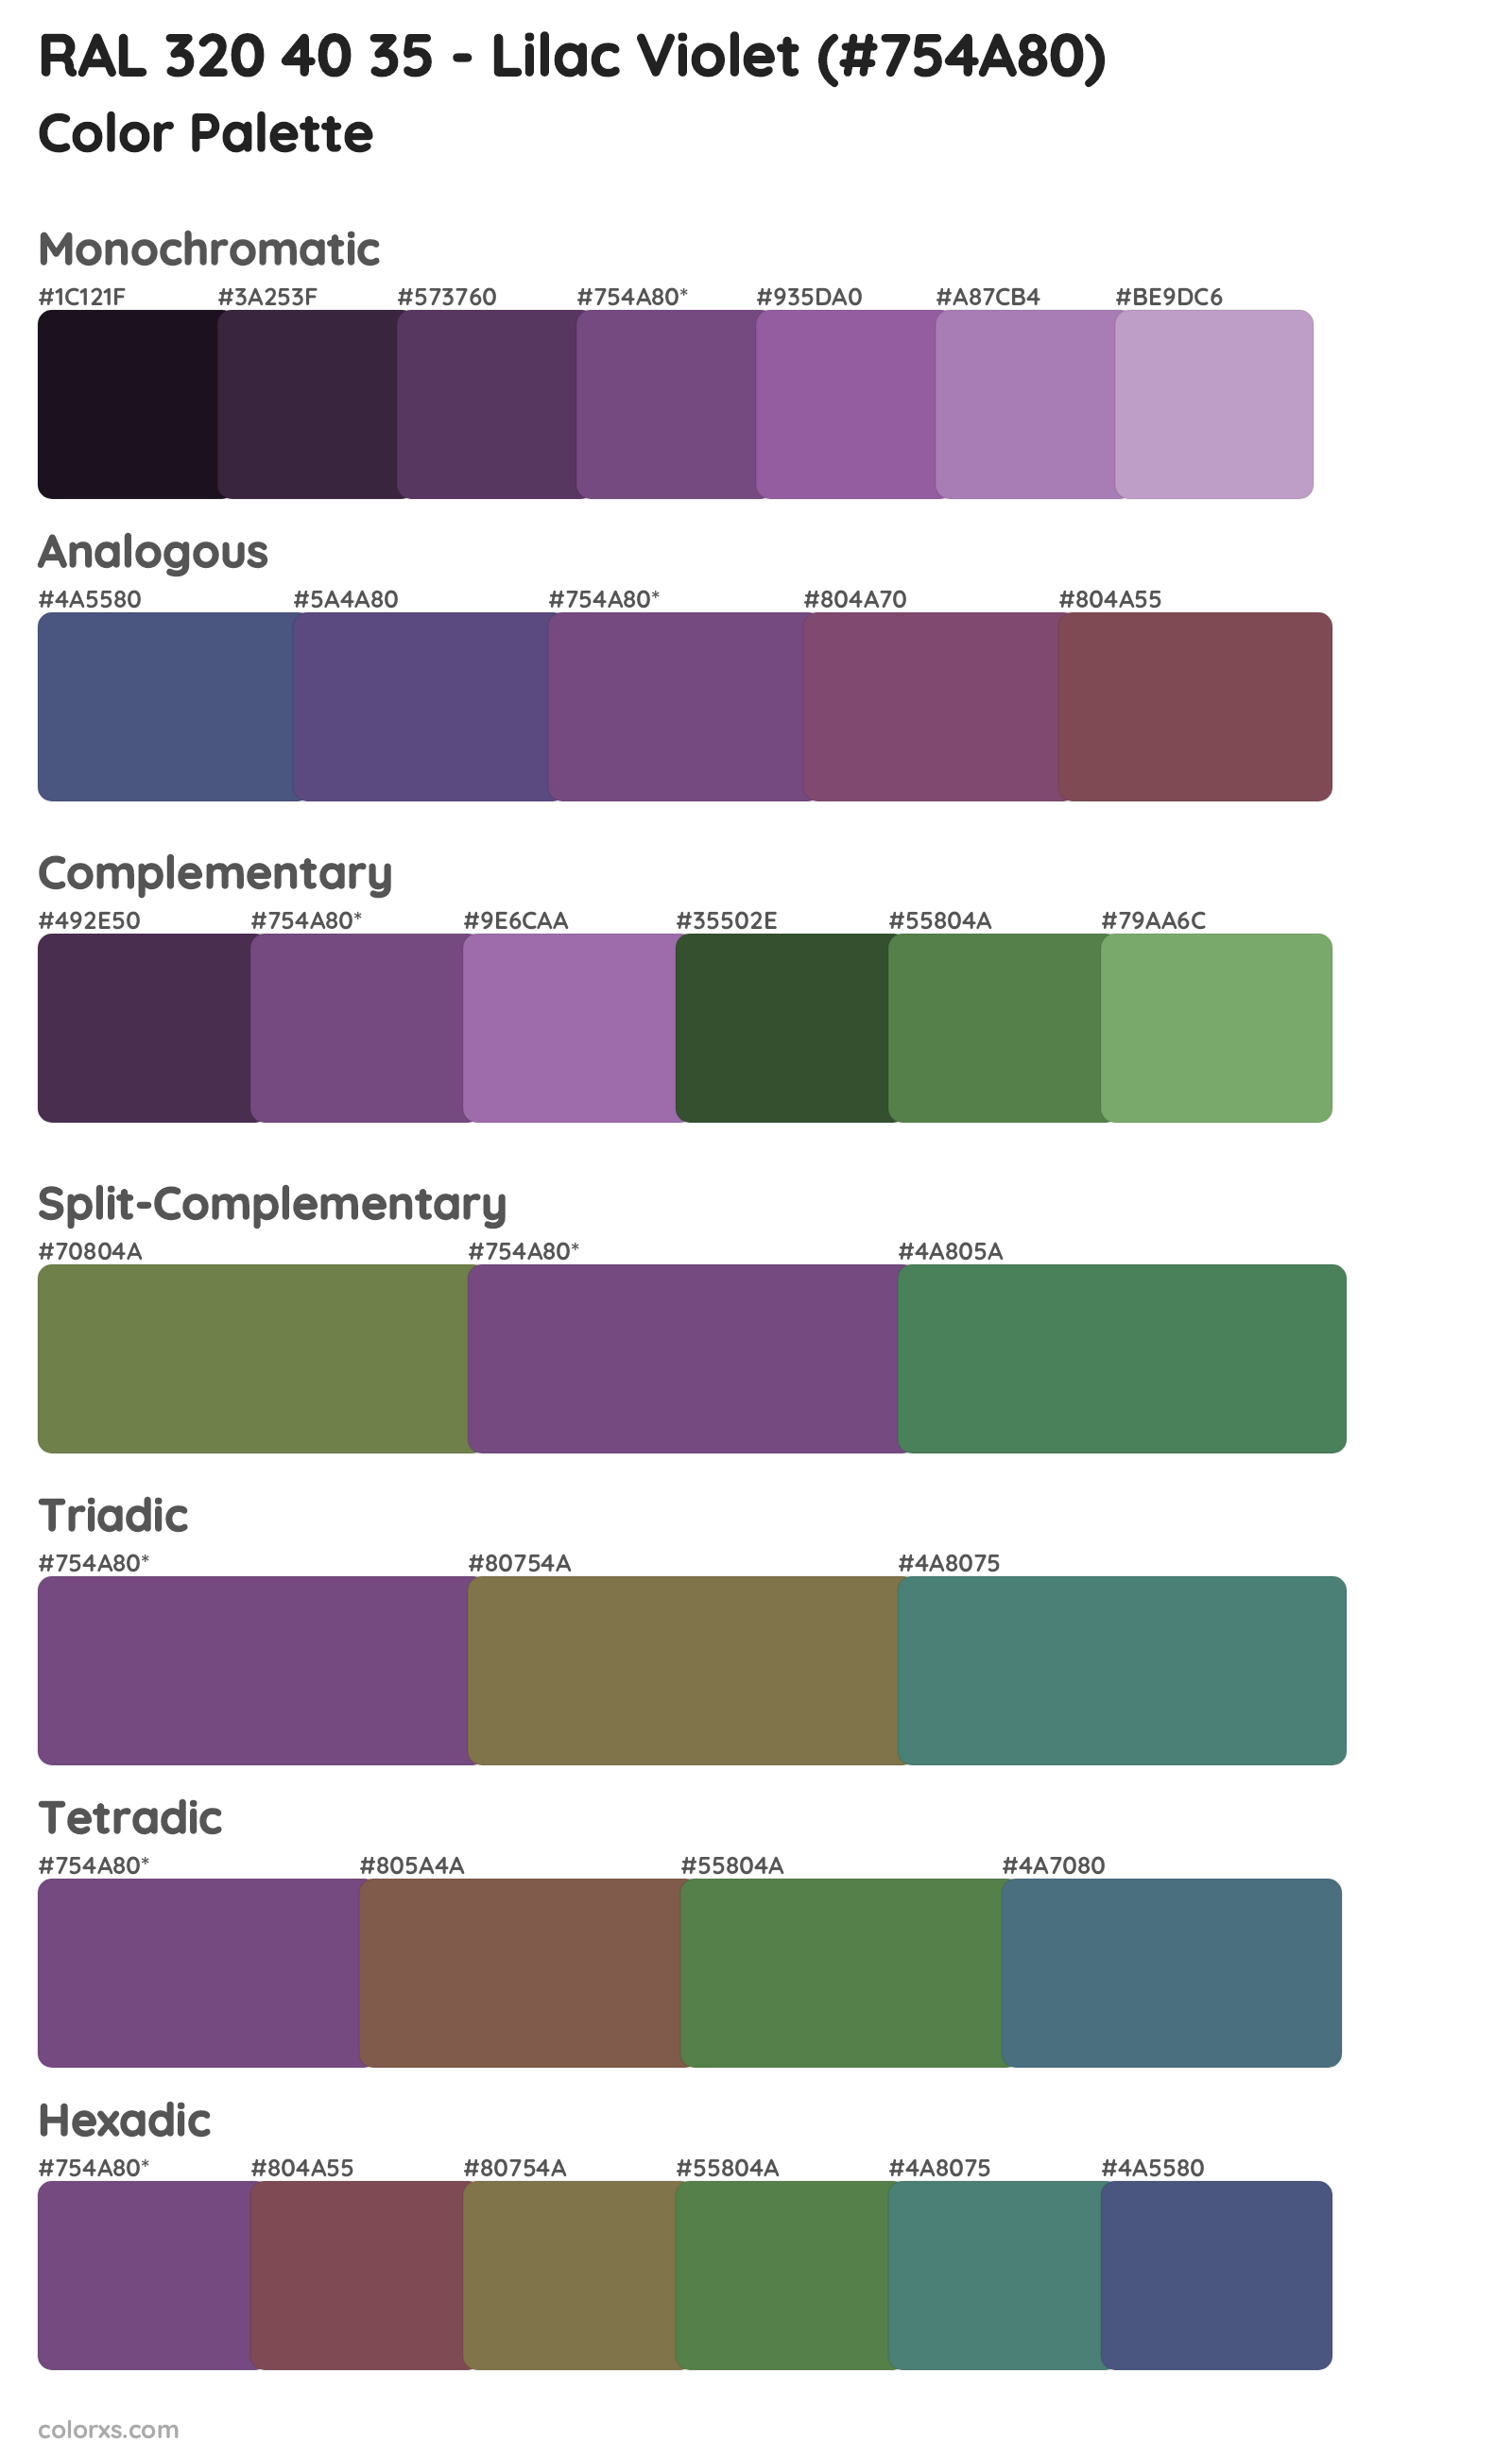 RAL 320 40 35 - Lilac Violet Color Scheme Palettes